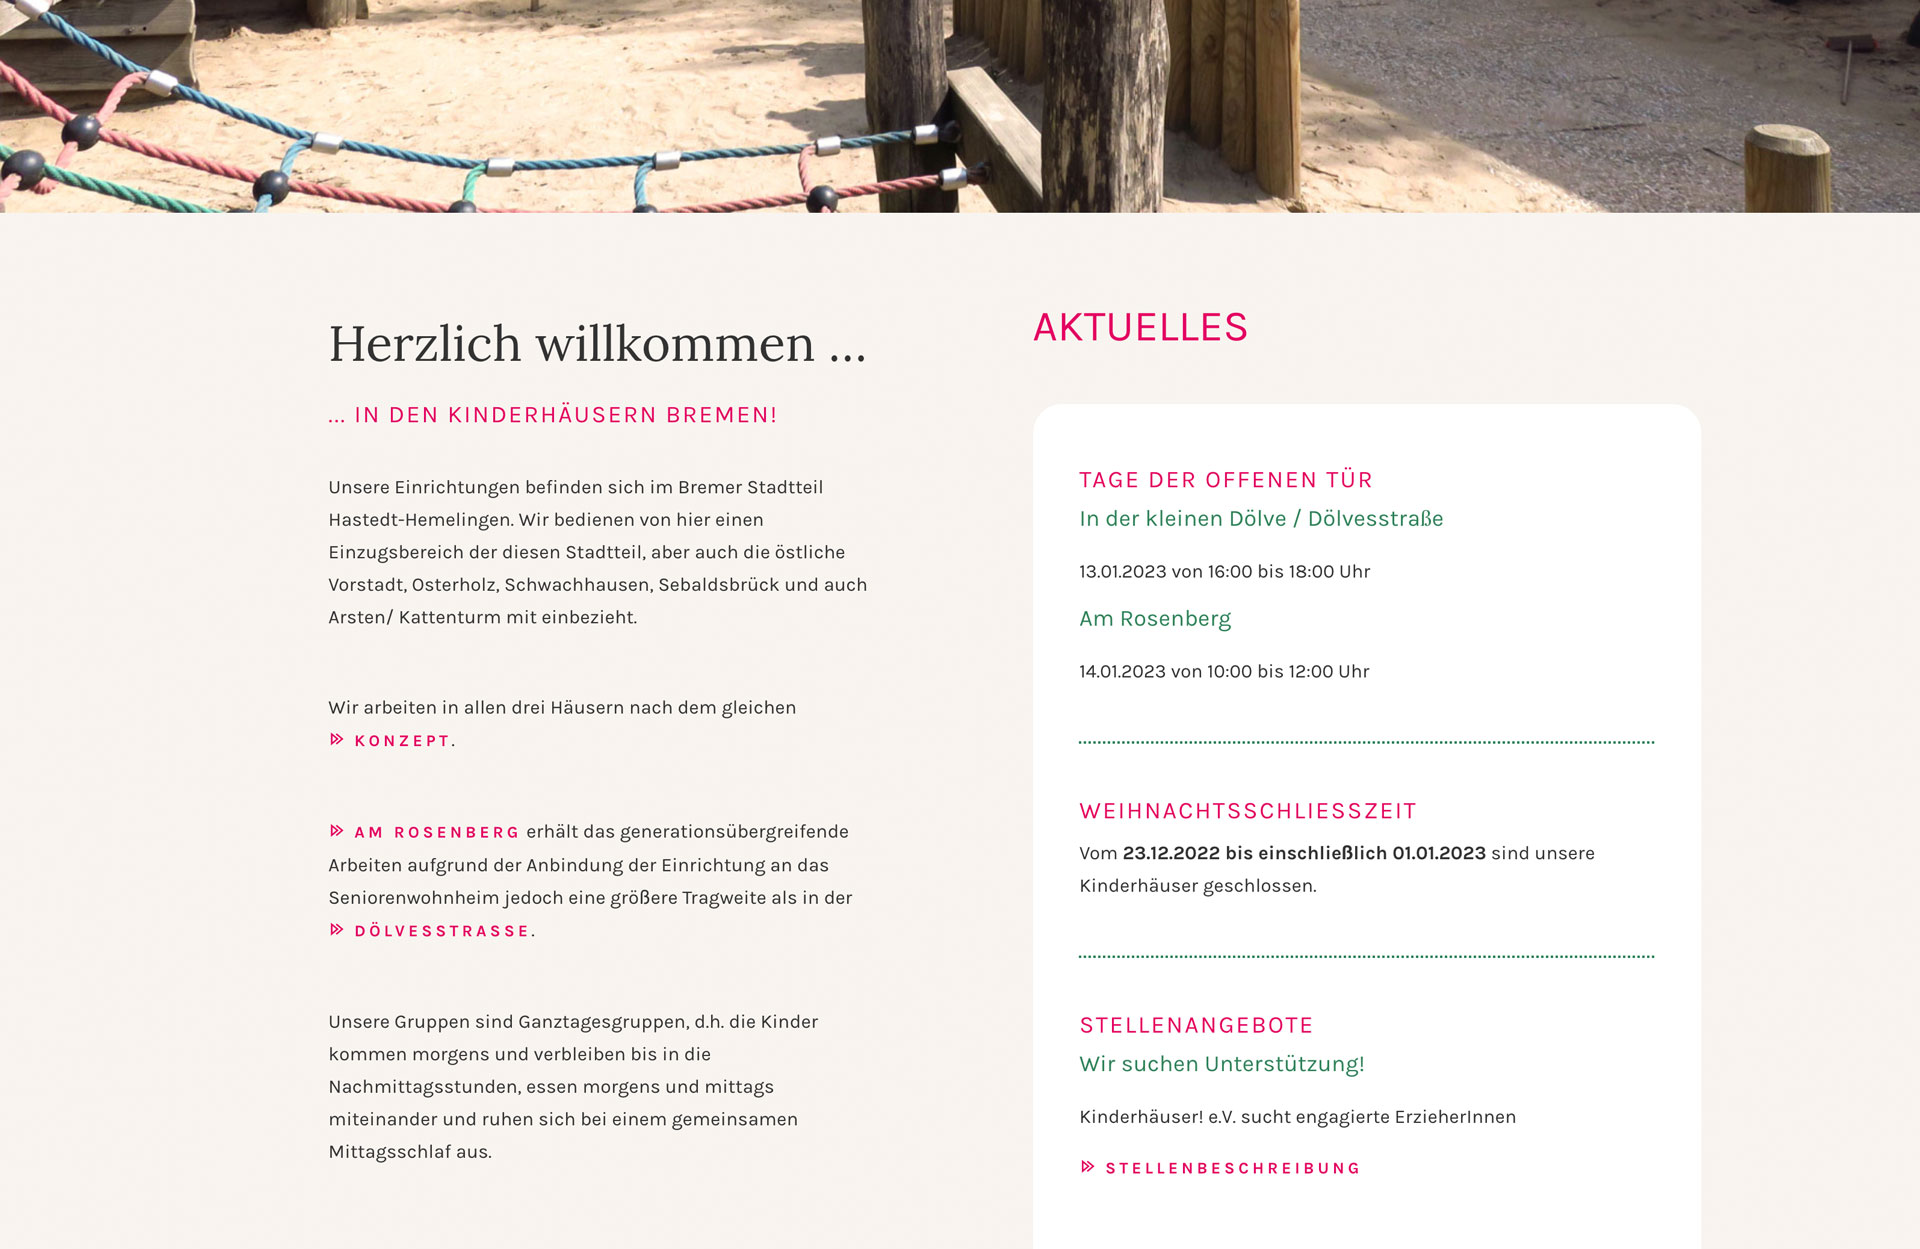 Website Kindergarten Bremen